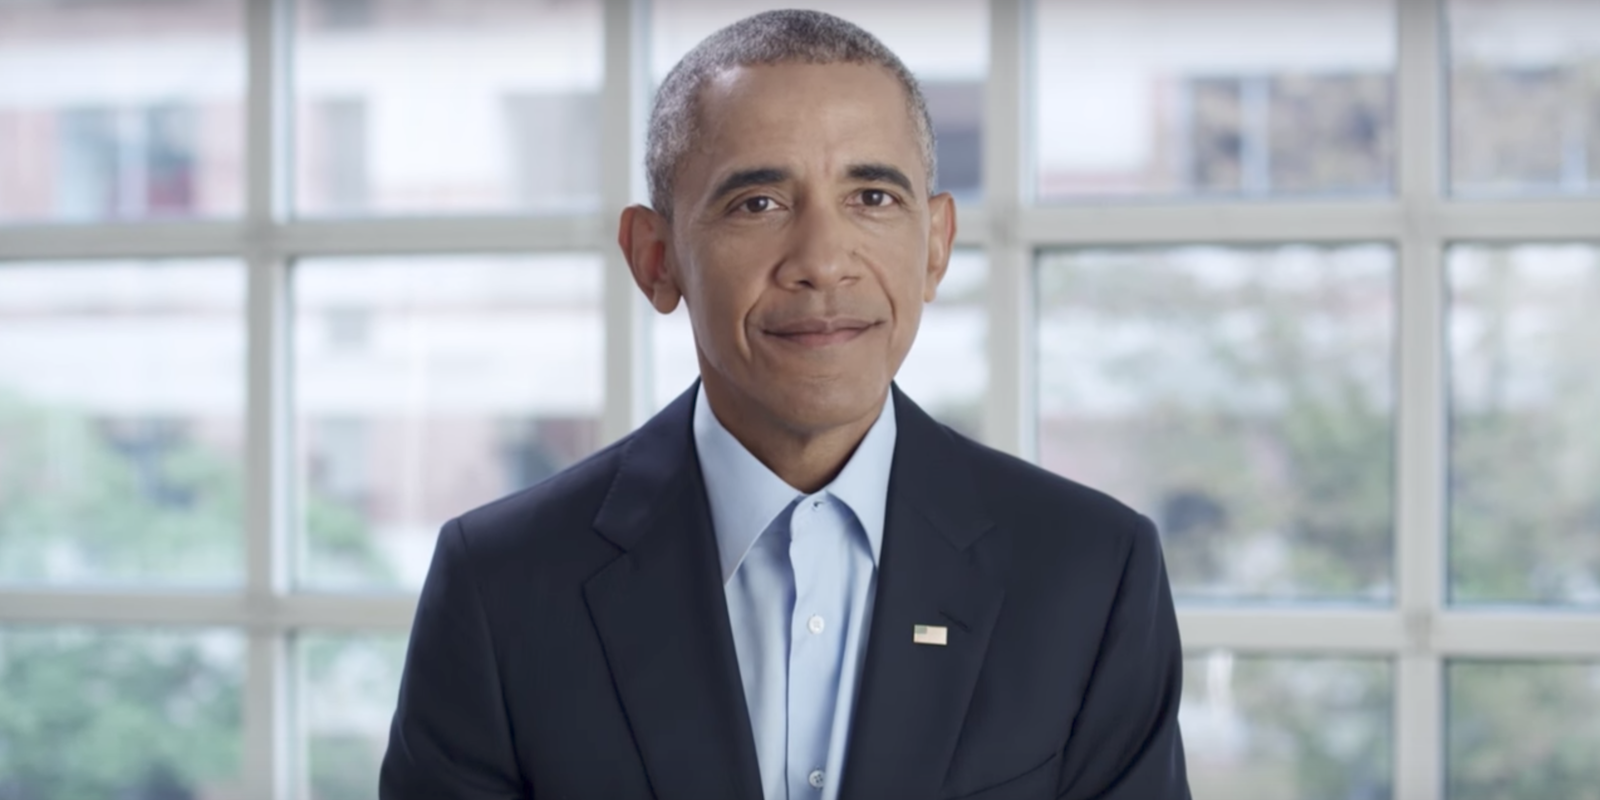 Former President Barack Obama Discusses Obama Foundation Mission